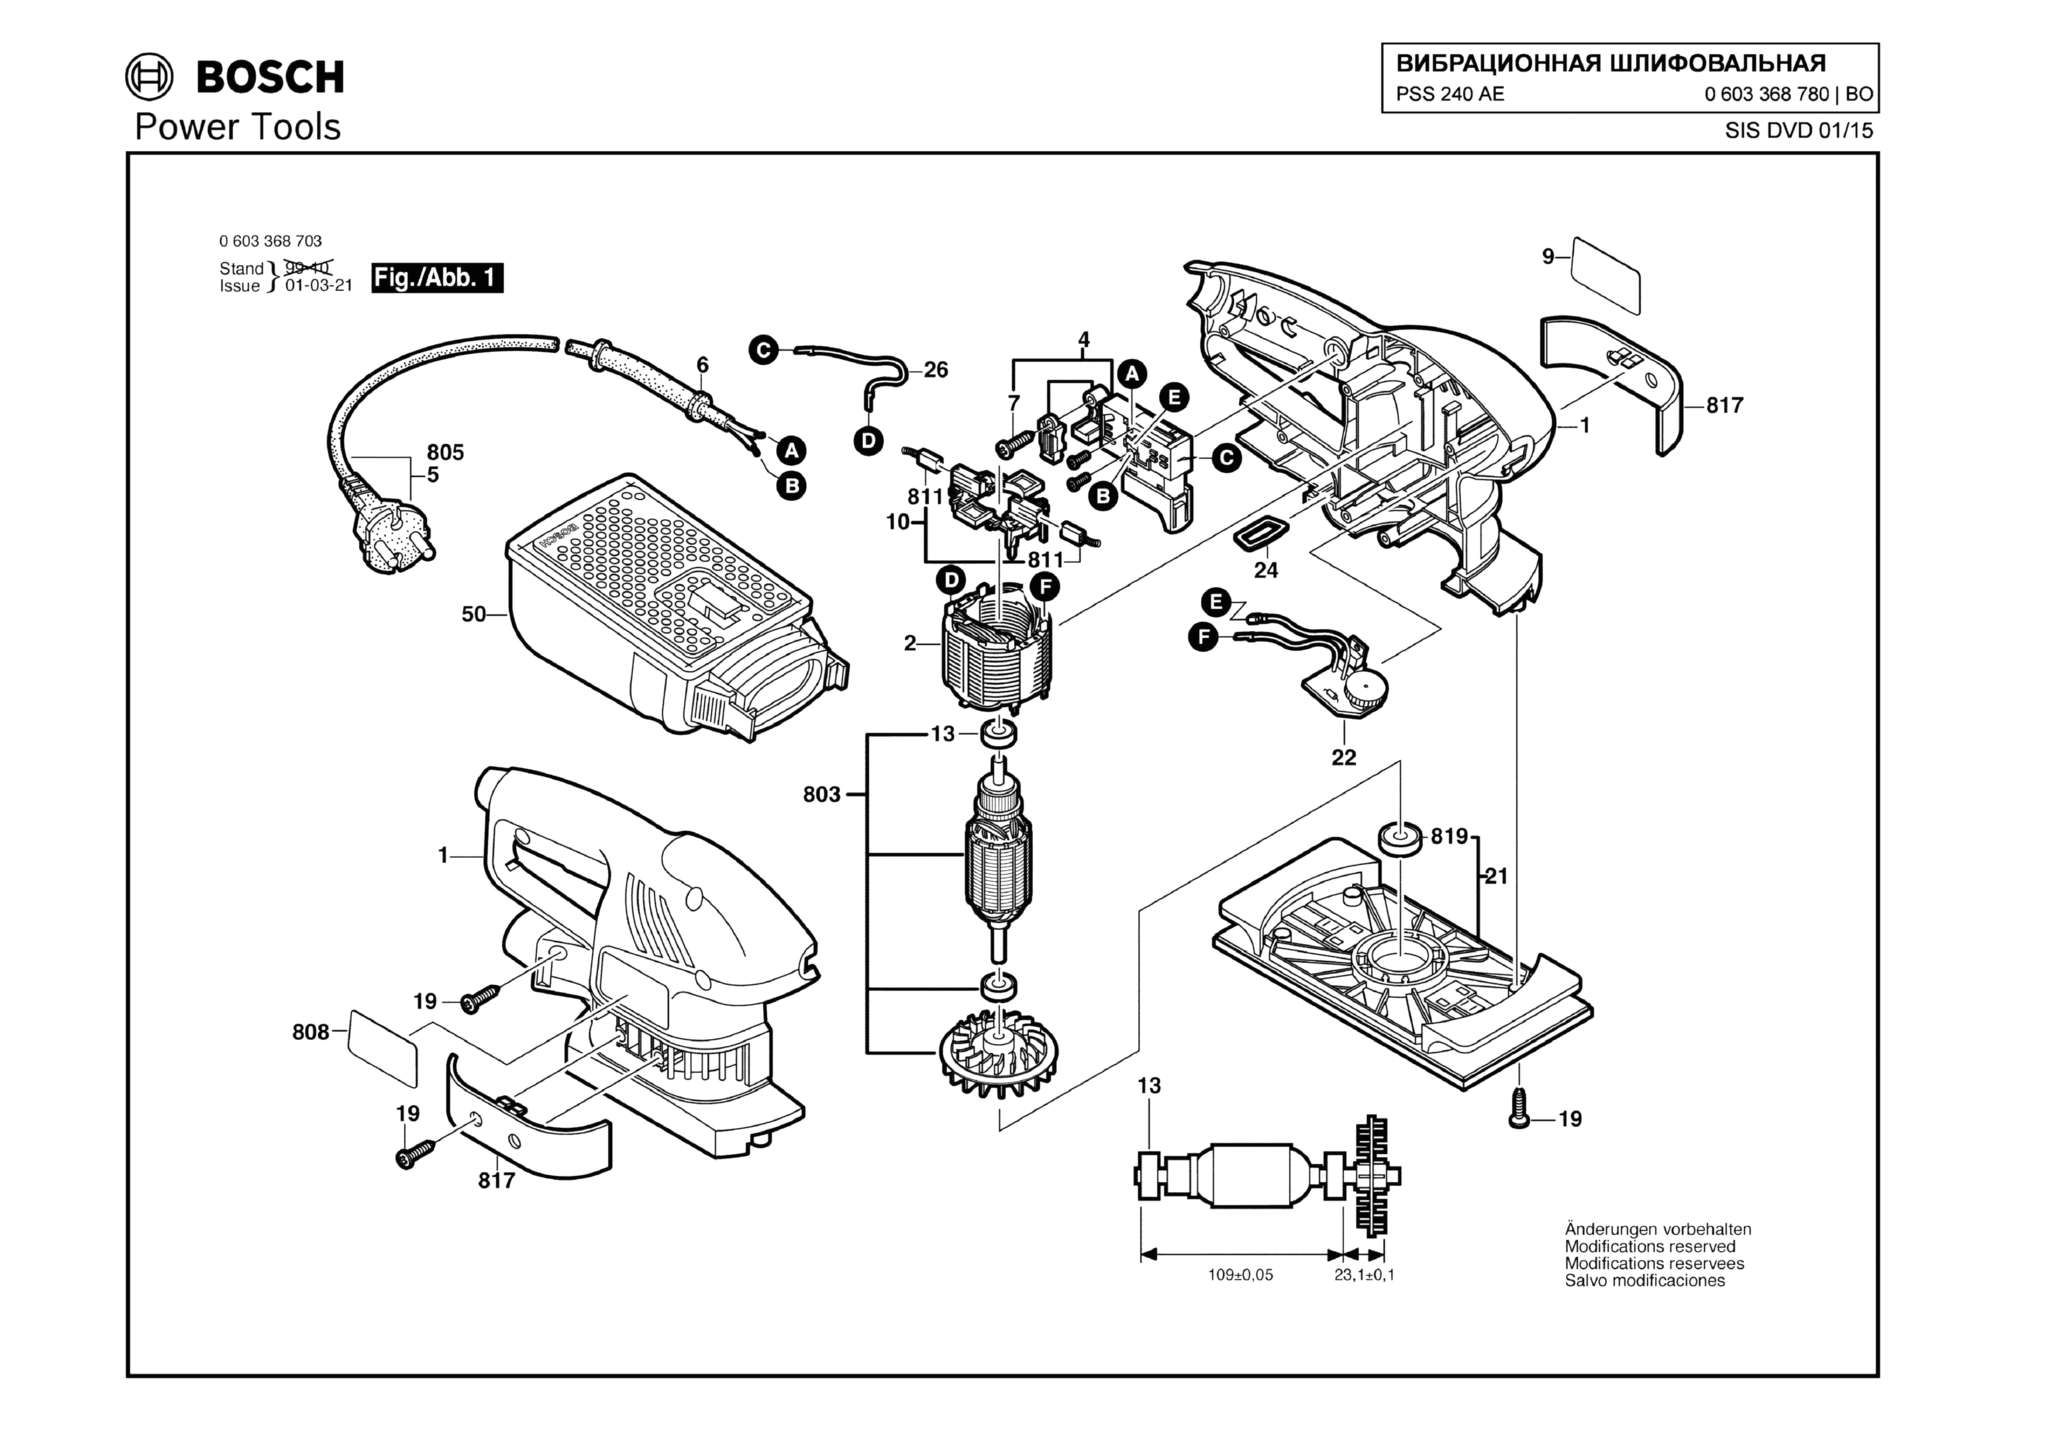 Запчасти, схема и деталировка Bosch PSS 240 AE (ТИП 0603368780)